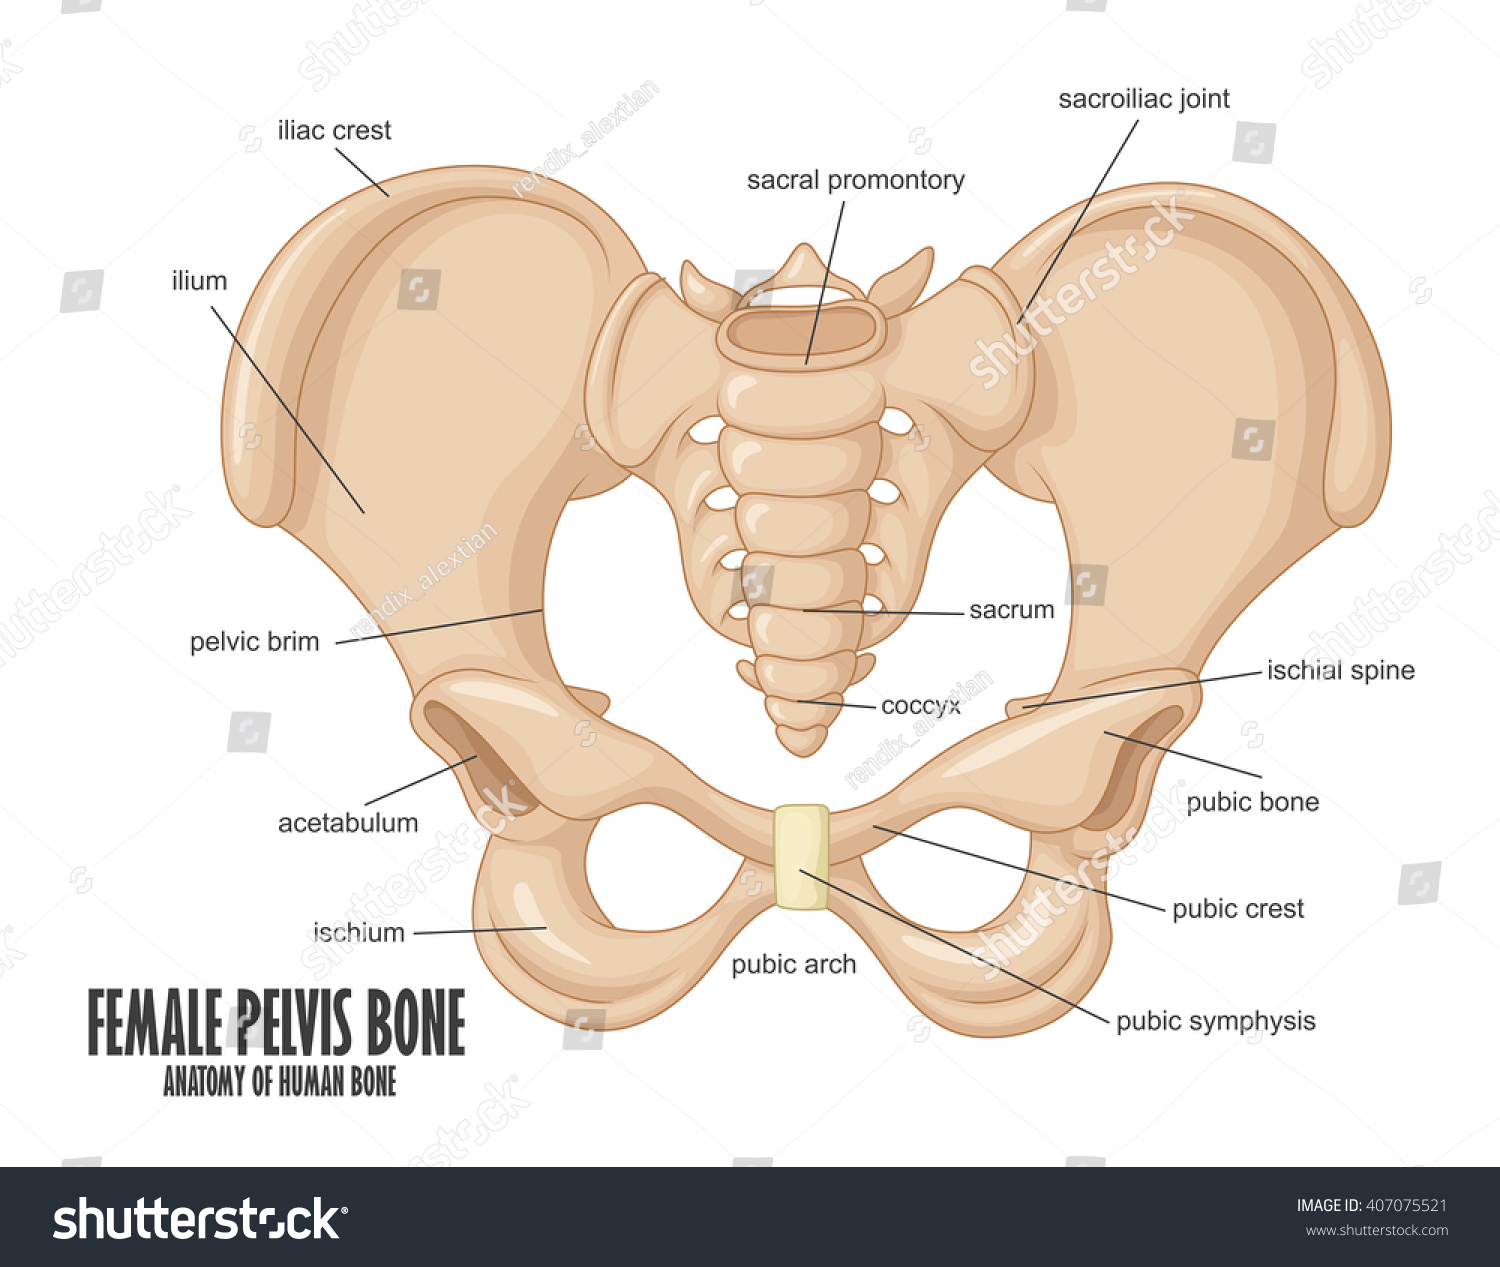 Female Pelvis Bone Anatomy Stock Photo 407075521 : Shutterstock